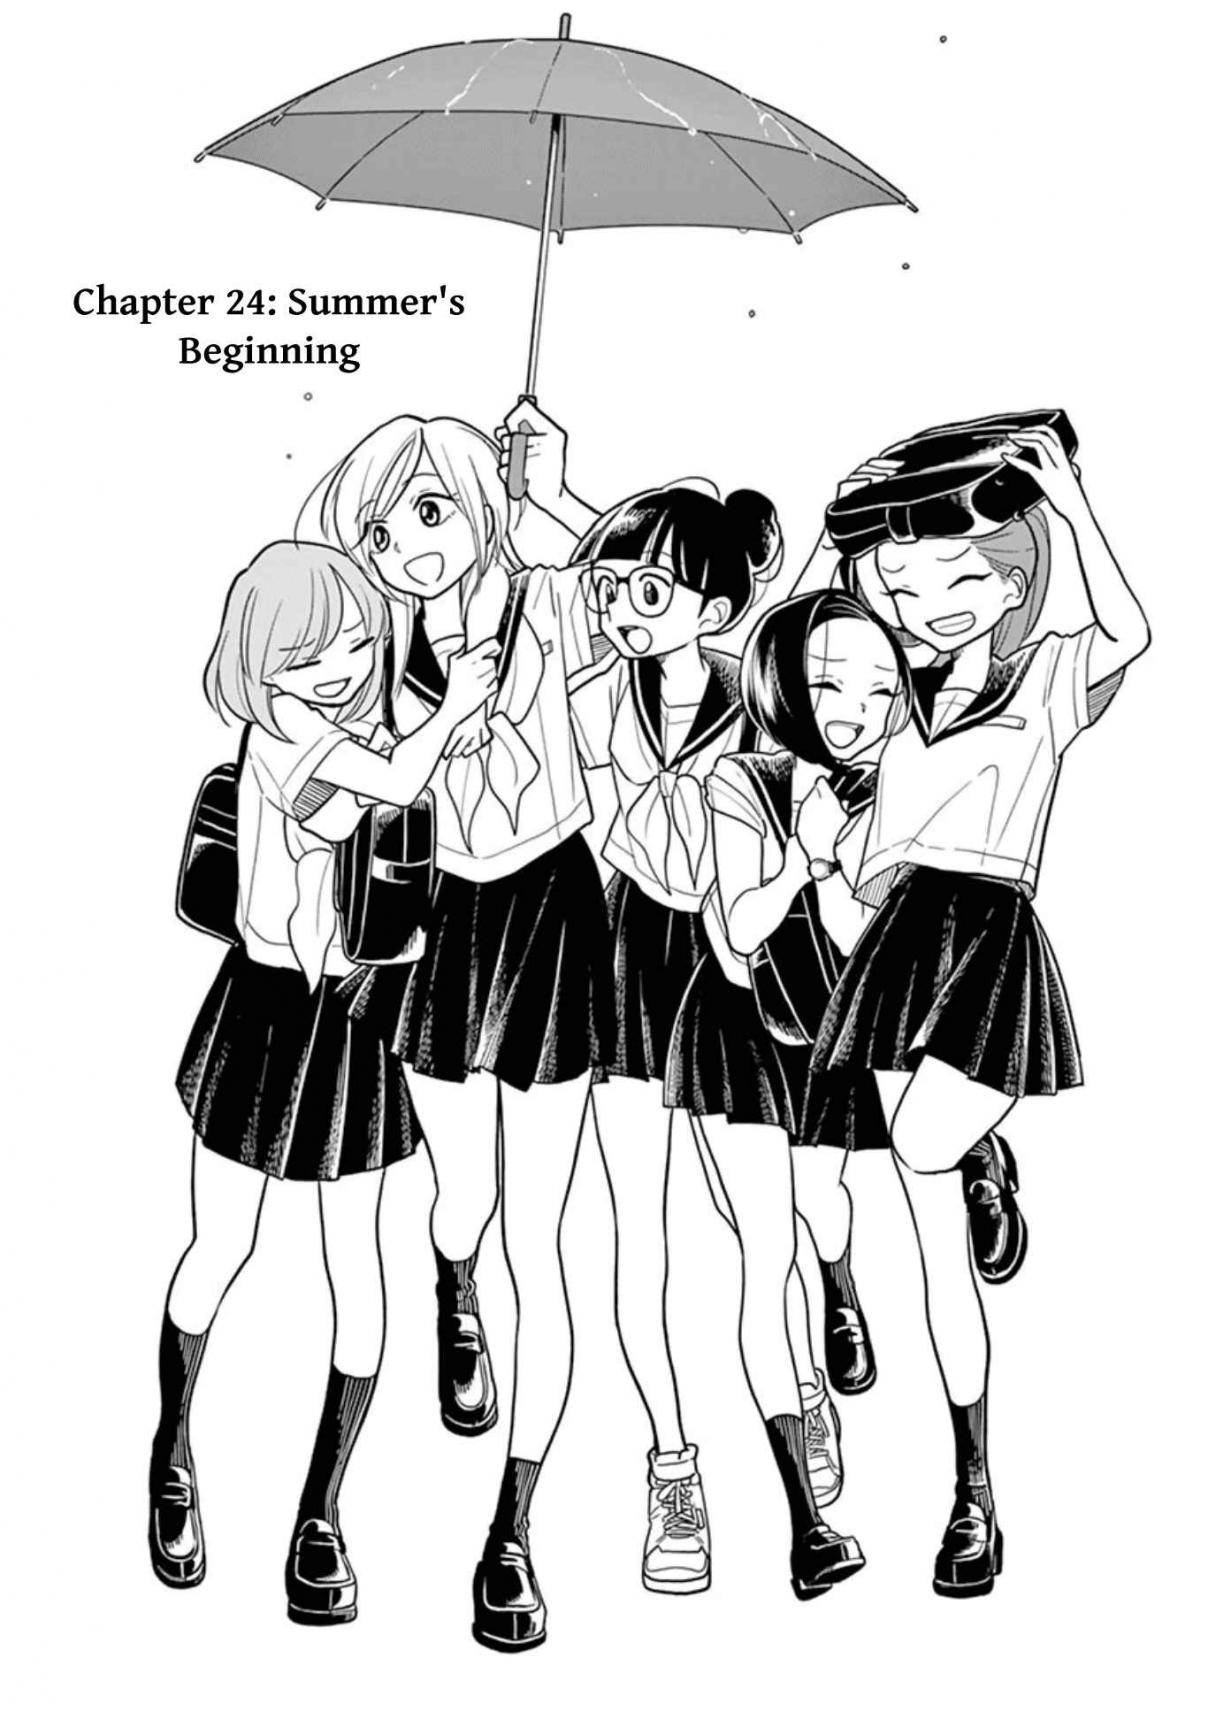 Hana ni Arashi Ch. 24 Summer's Beginning